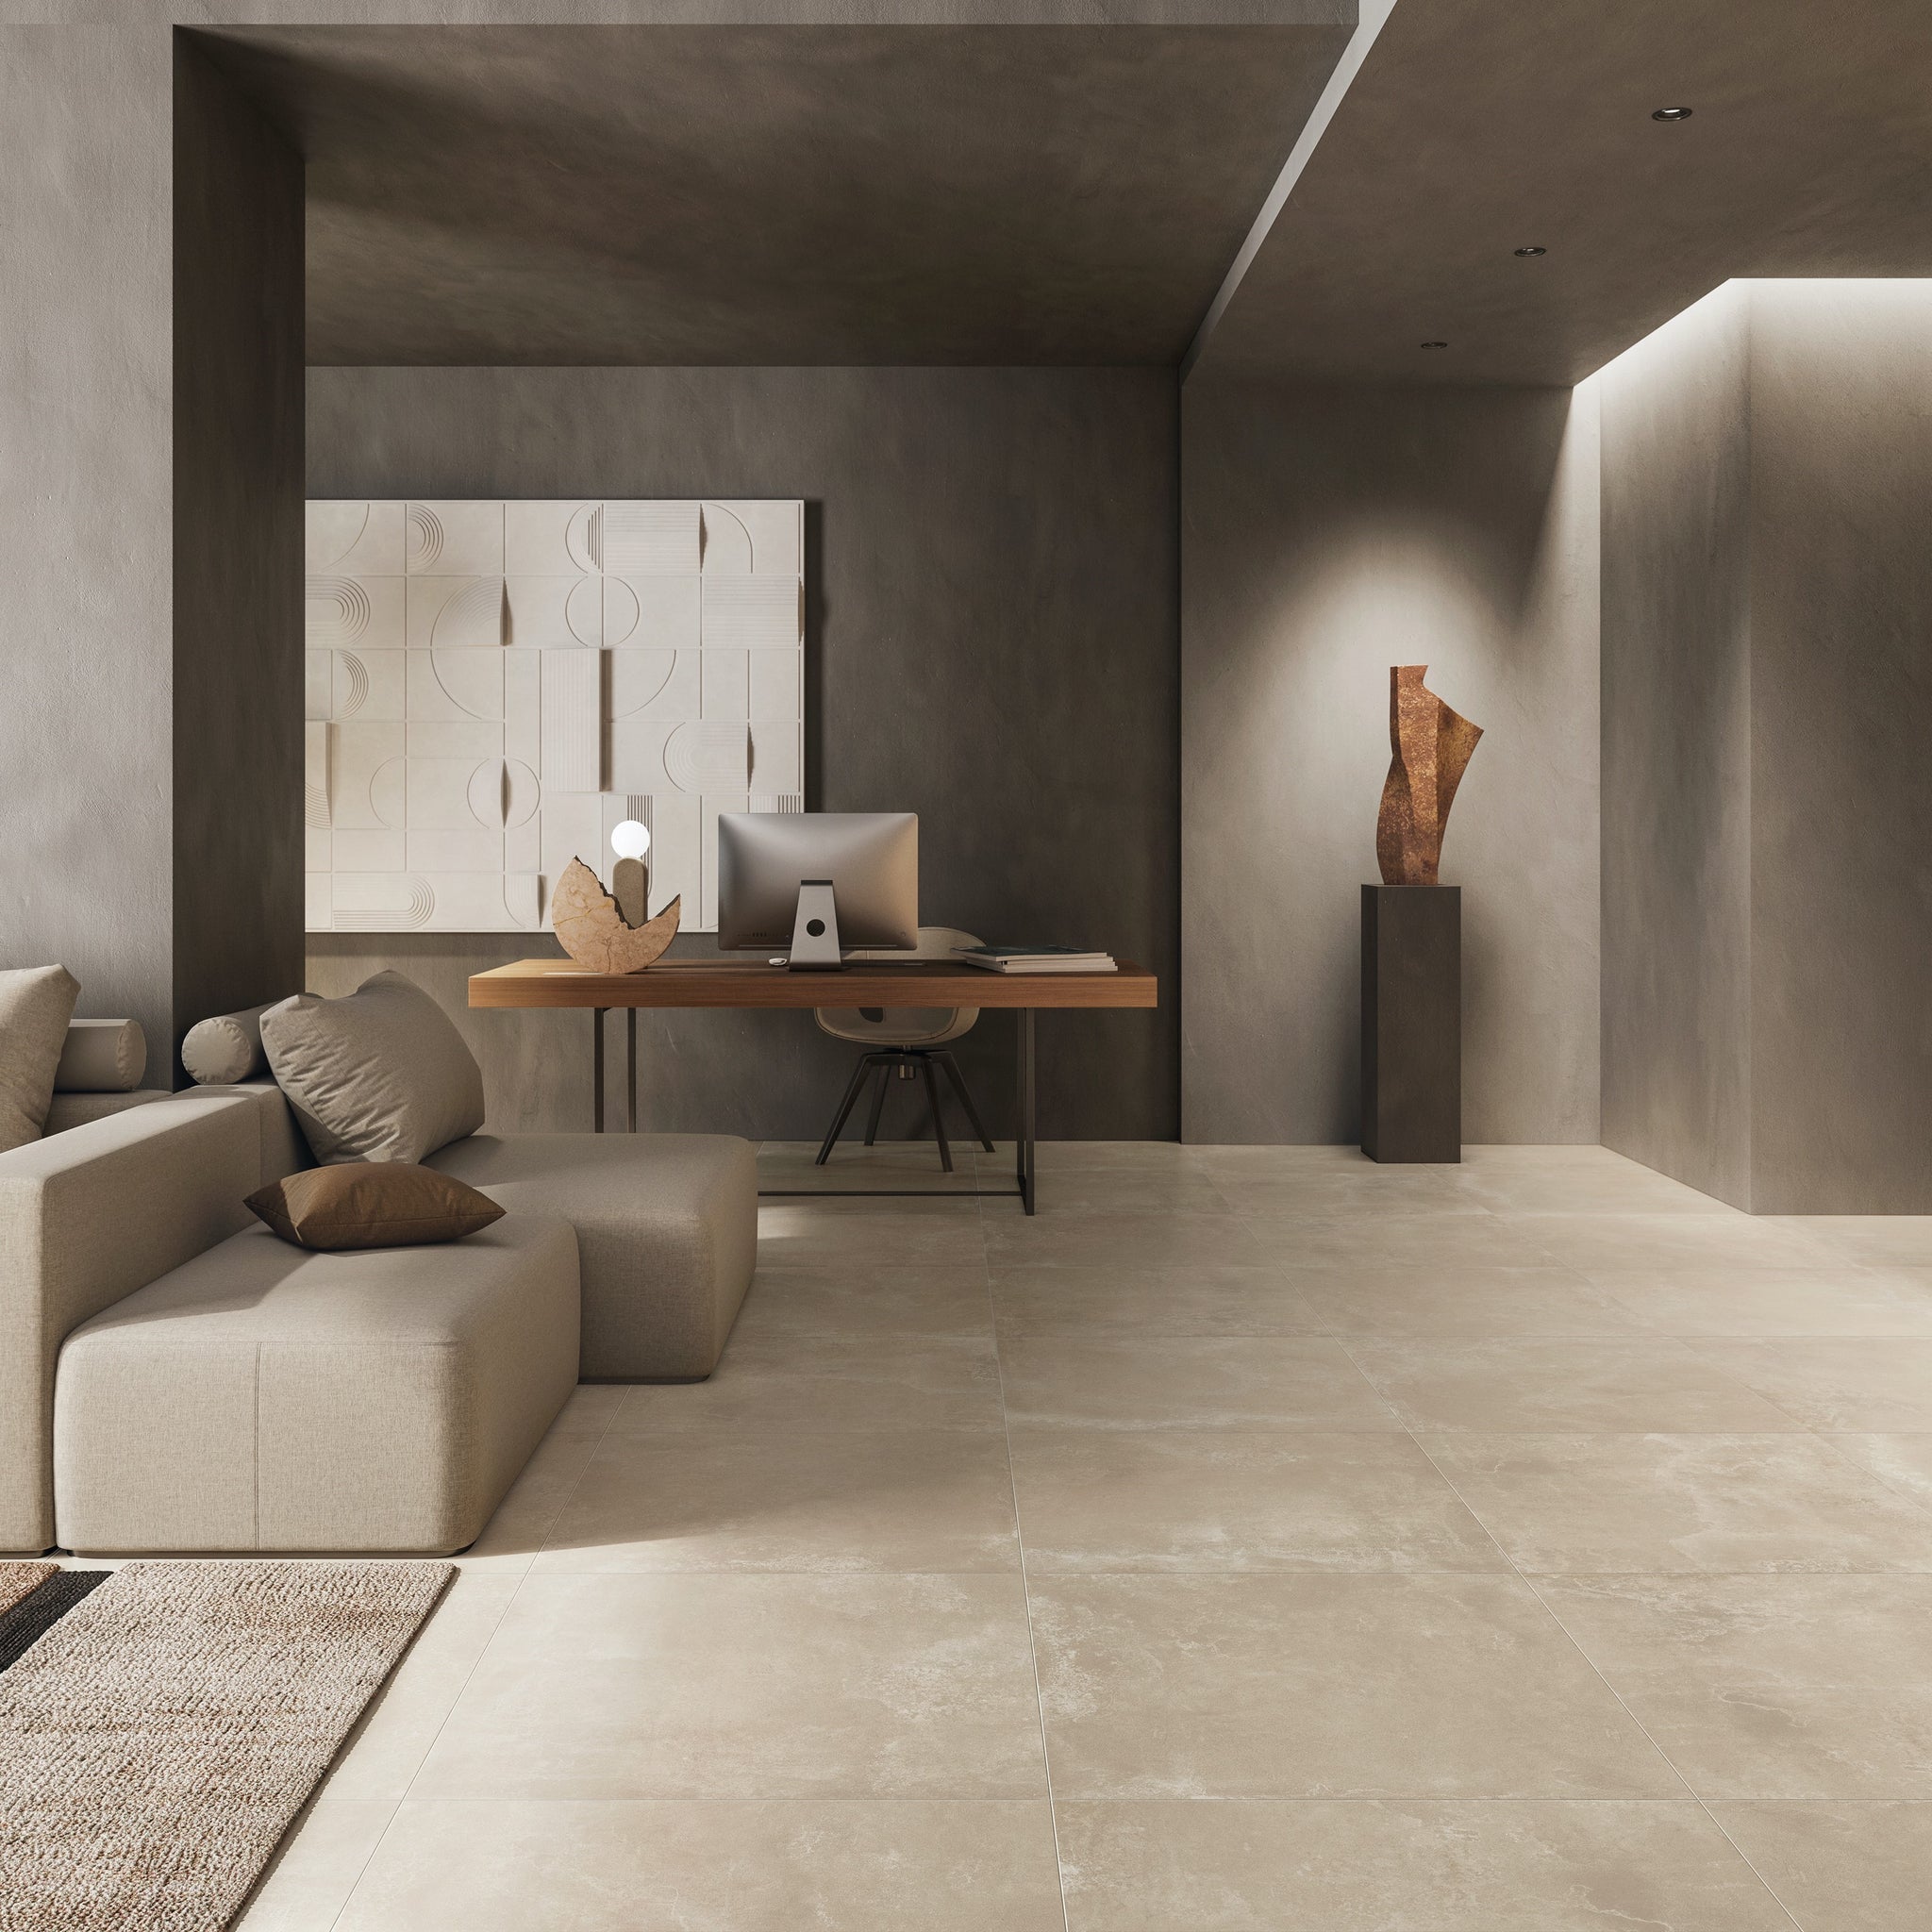 Blend-OL Salon Concept / Blend-OL Living room Concept